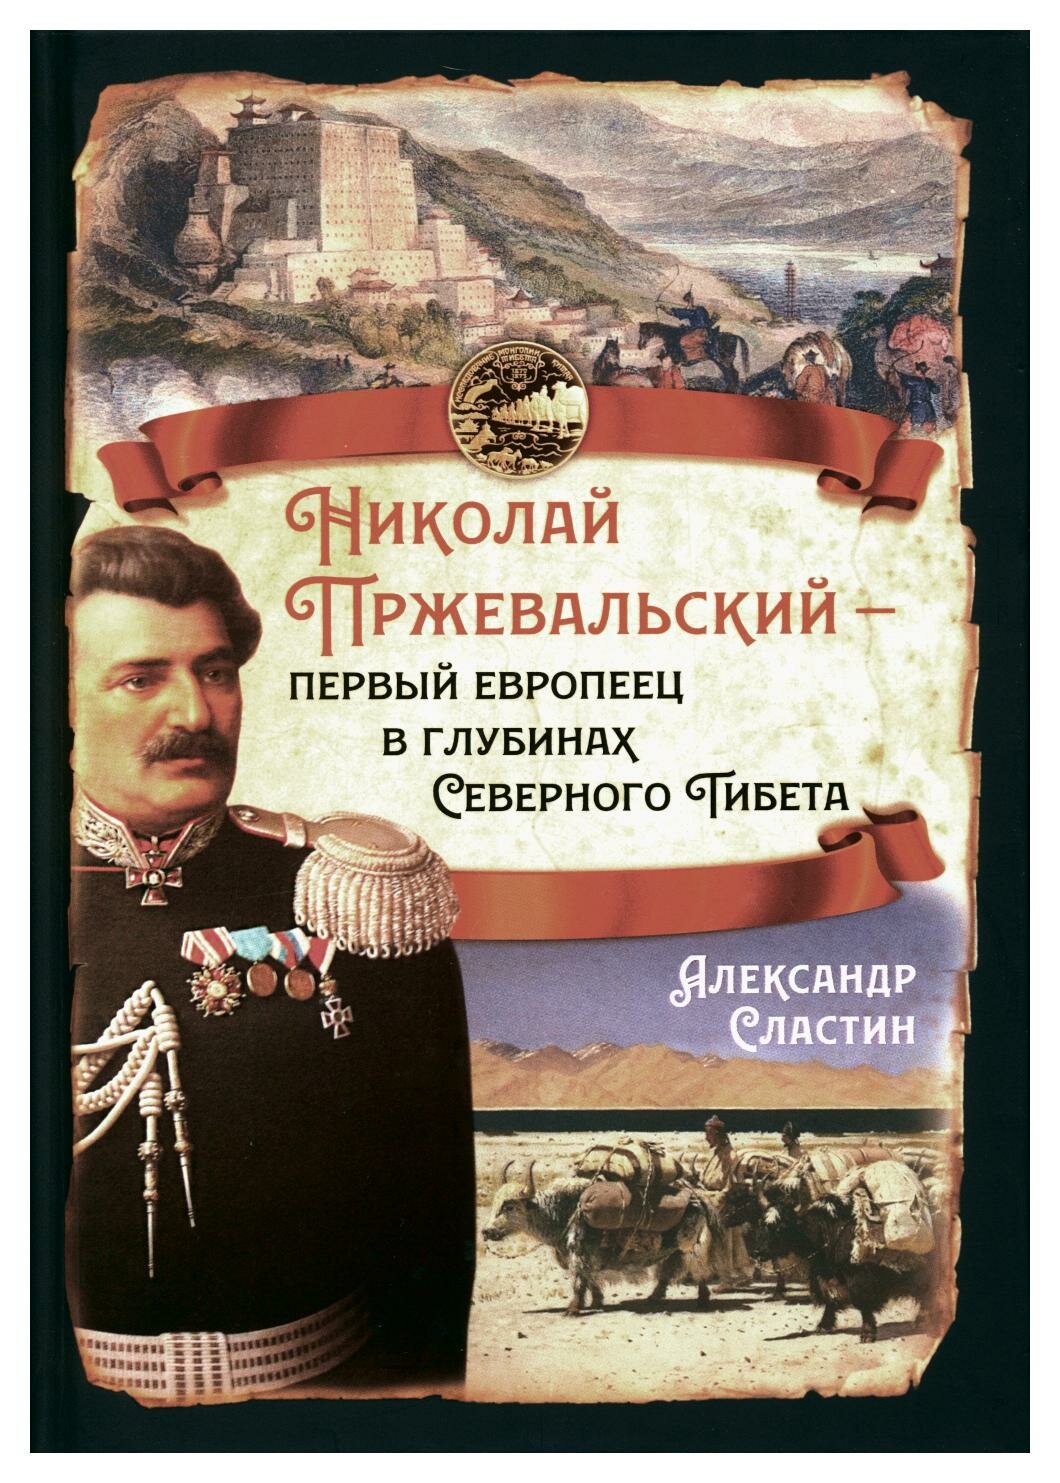 Николай Пржевальский - первый европеец в глубинах Северного Тибета - фото №4